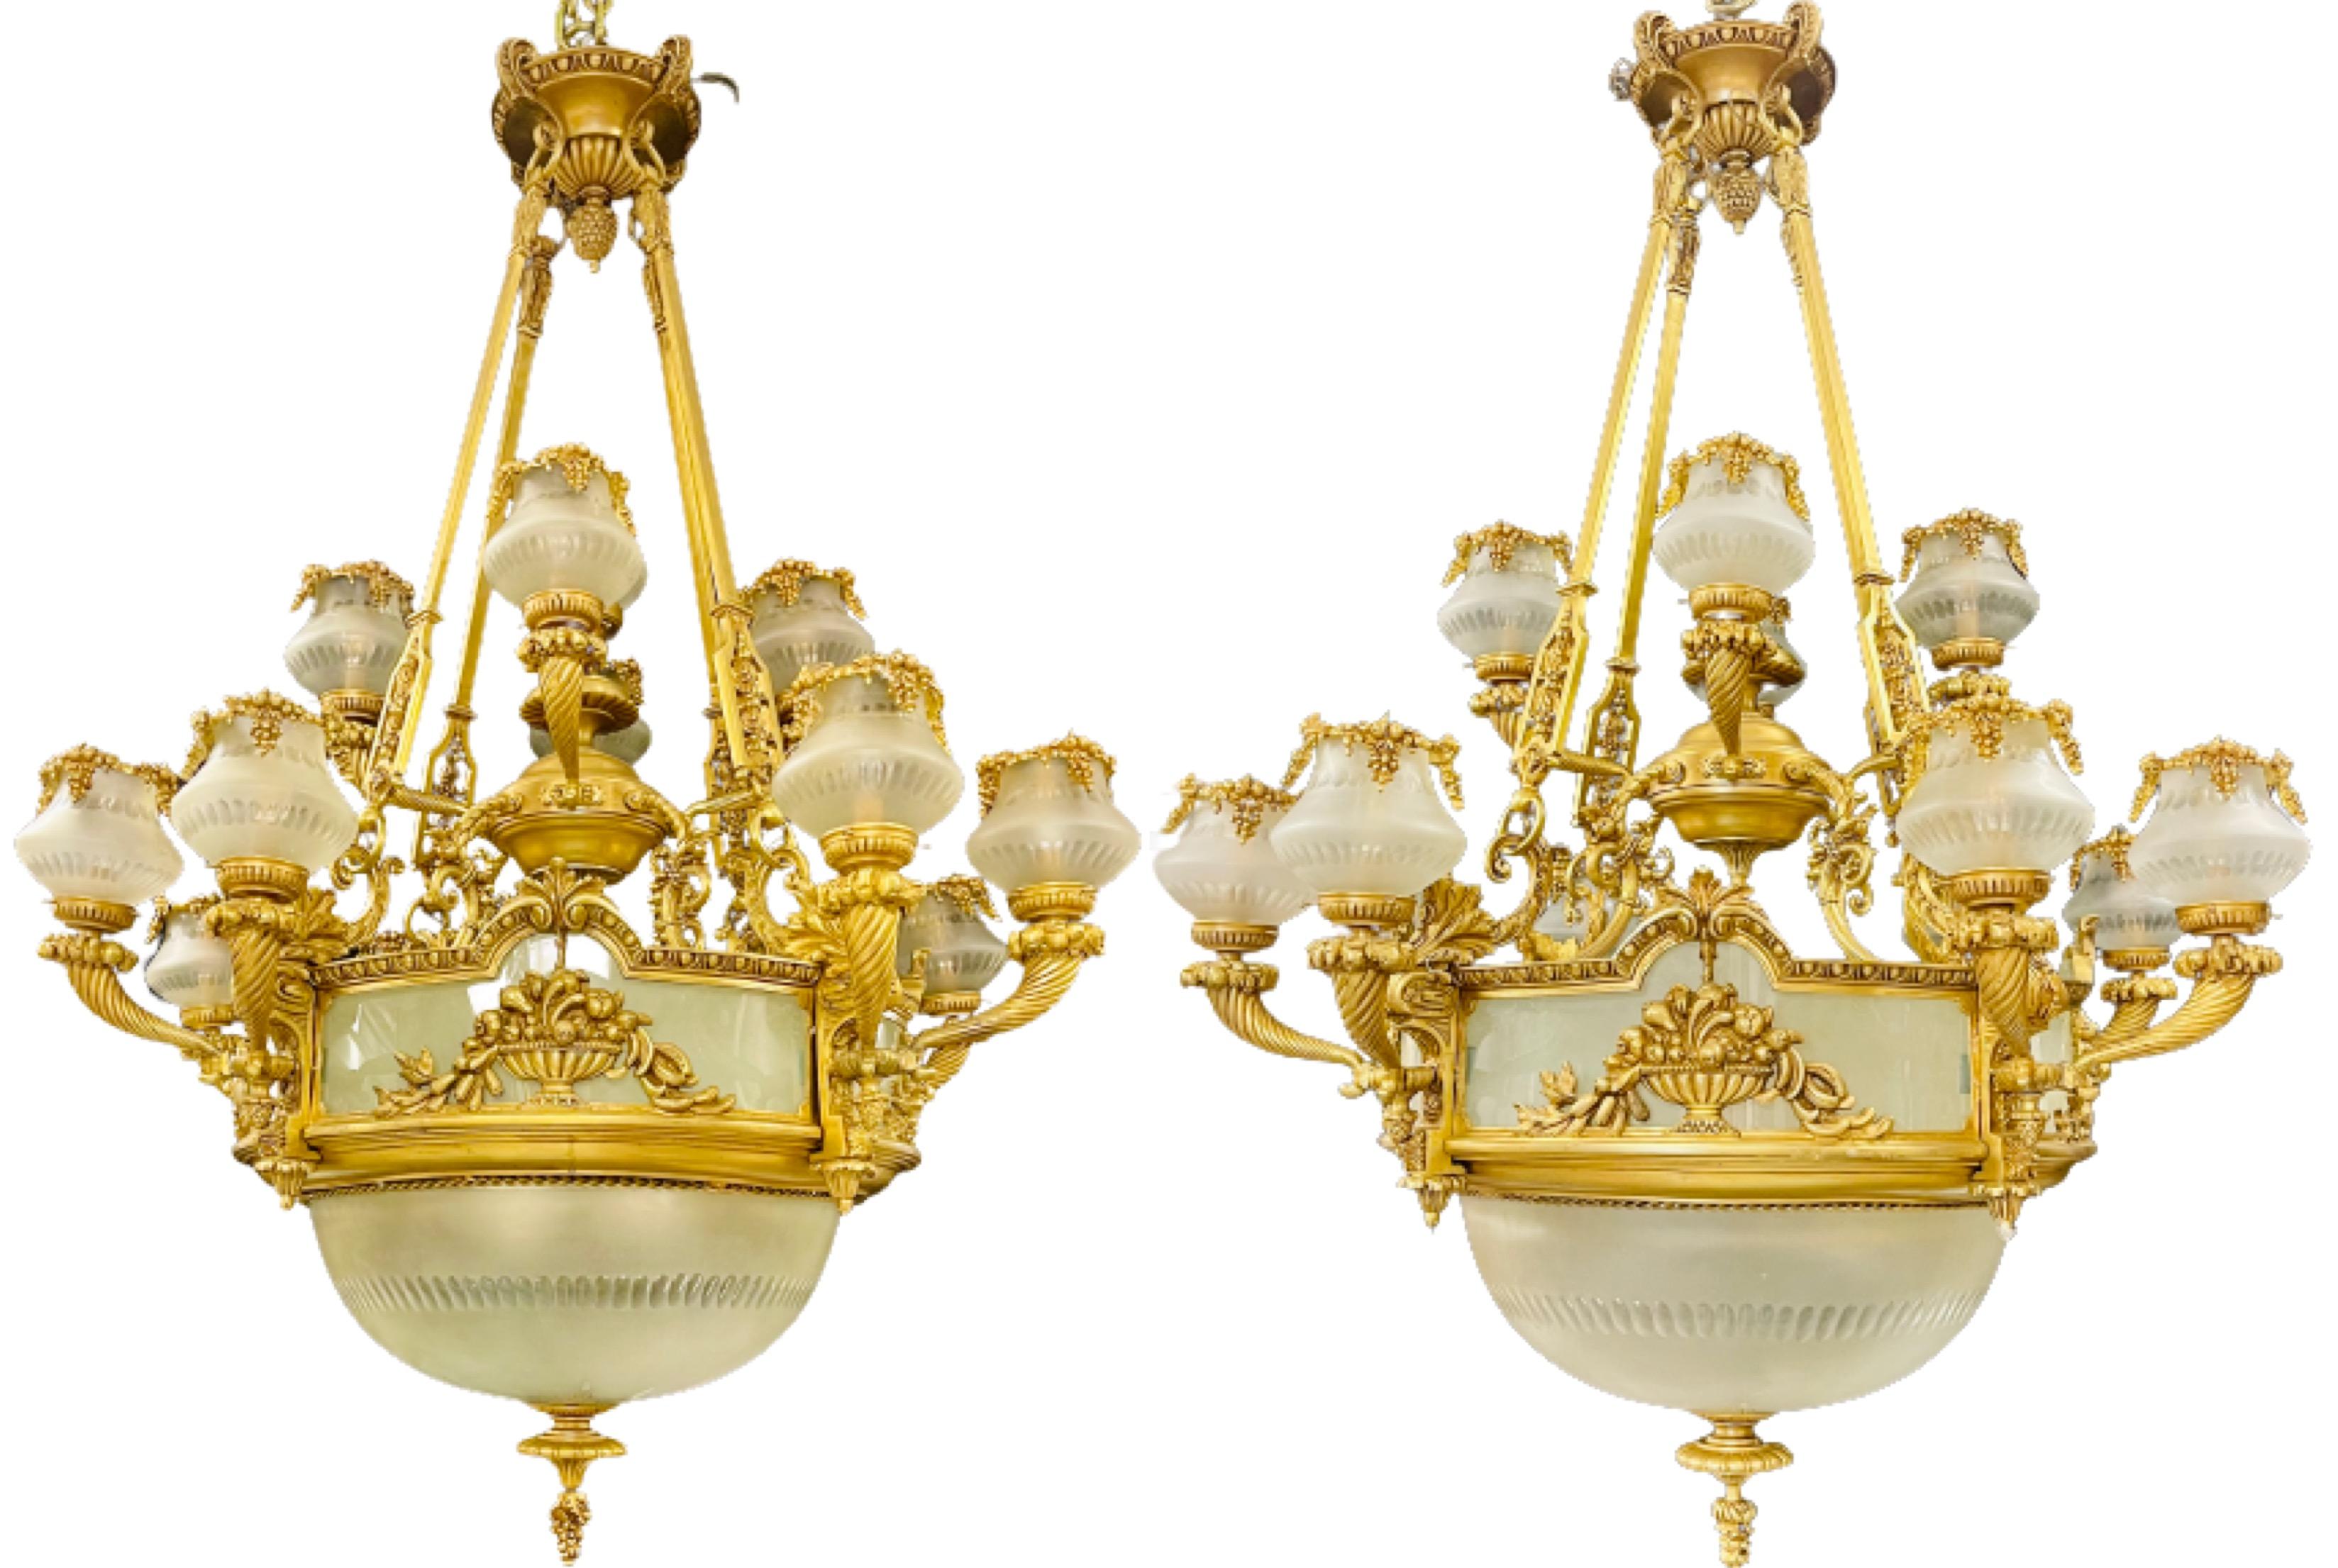 Paire de lustres en bronze de style Louis XVI. Une grande et impressionnante paire de lustres palatiaux en bronze doré ayant 13 bras lumineux avec quatre ampoules à l'intérieur de la grande coupe en verre dépoli. Ce lustre finement moulé a une